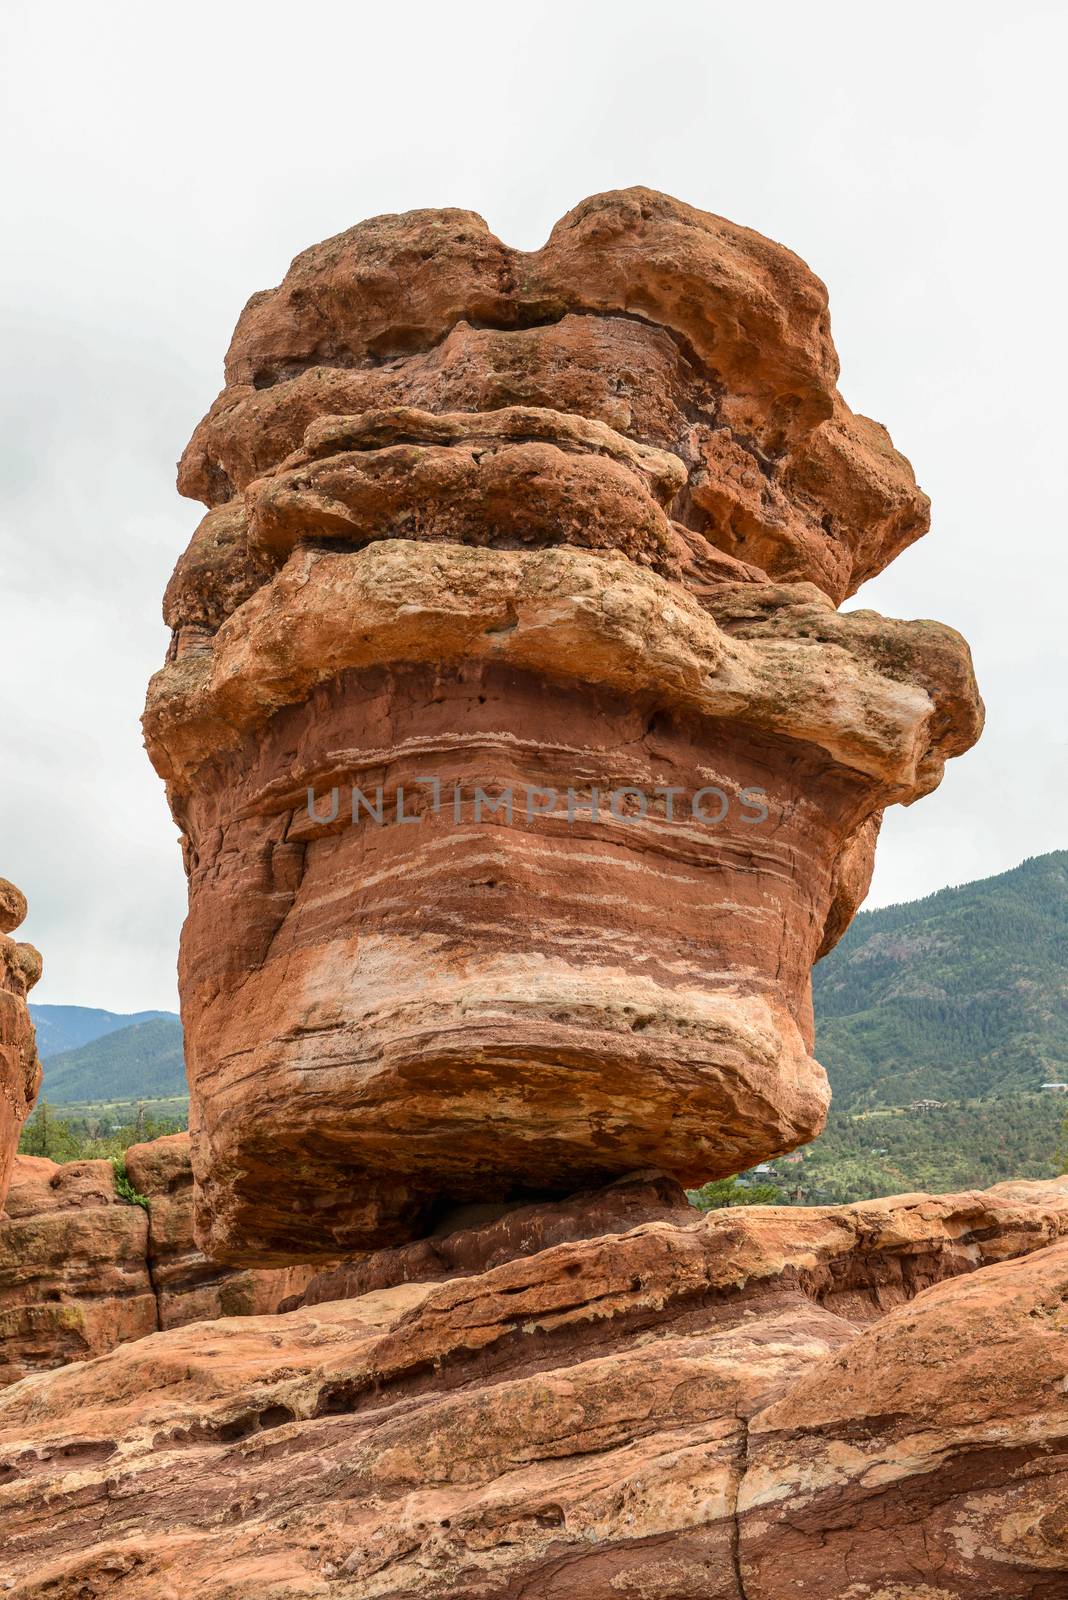 Balanced Rock in Garden of the Gods, Colorado